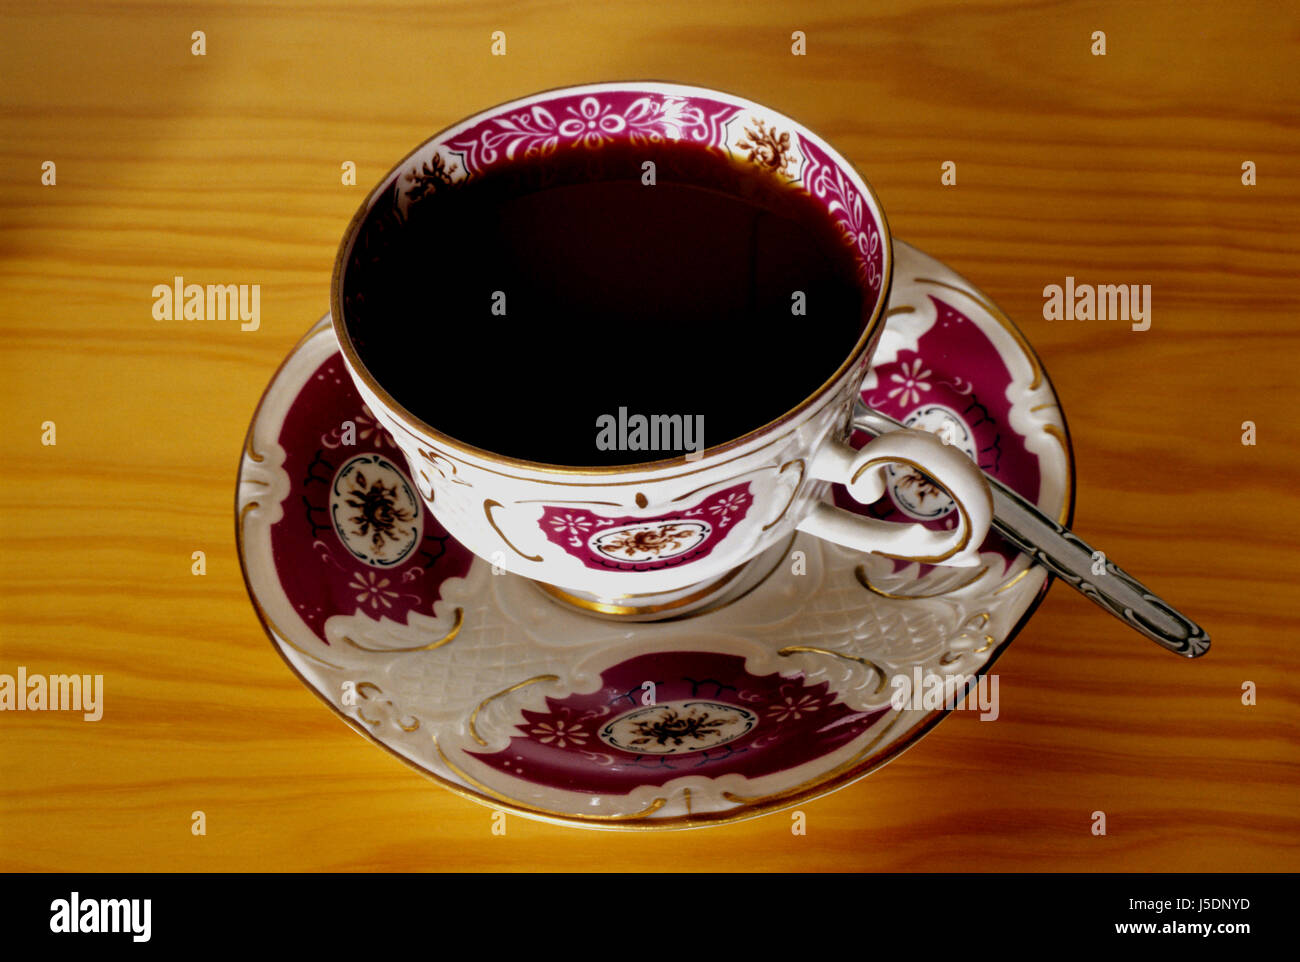 Tazza nera jetblack swarthy deep black tazza da caffè puro caffè cucchiaino da caffè Foto Stock